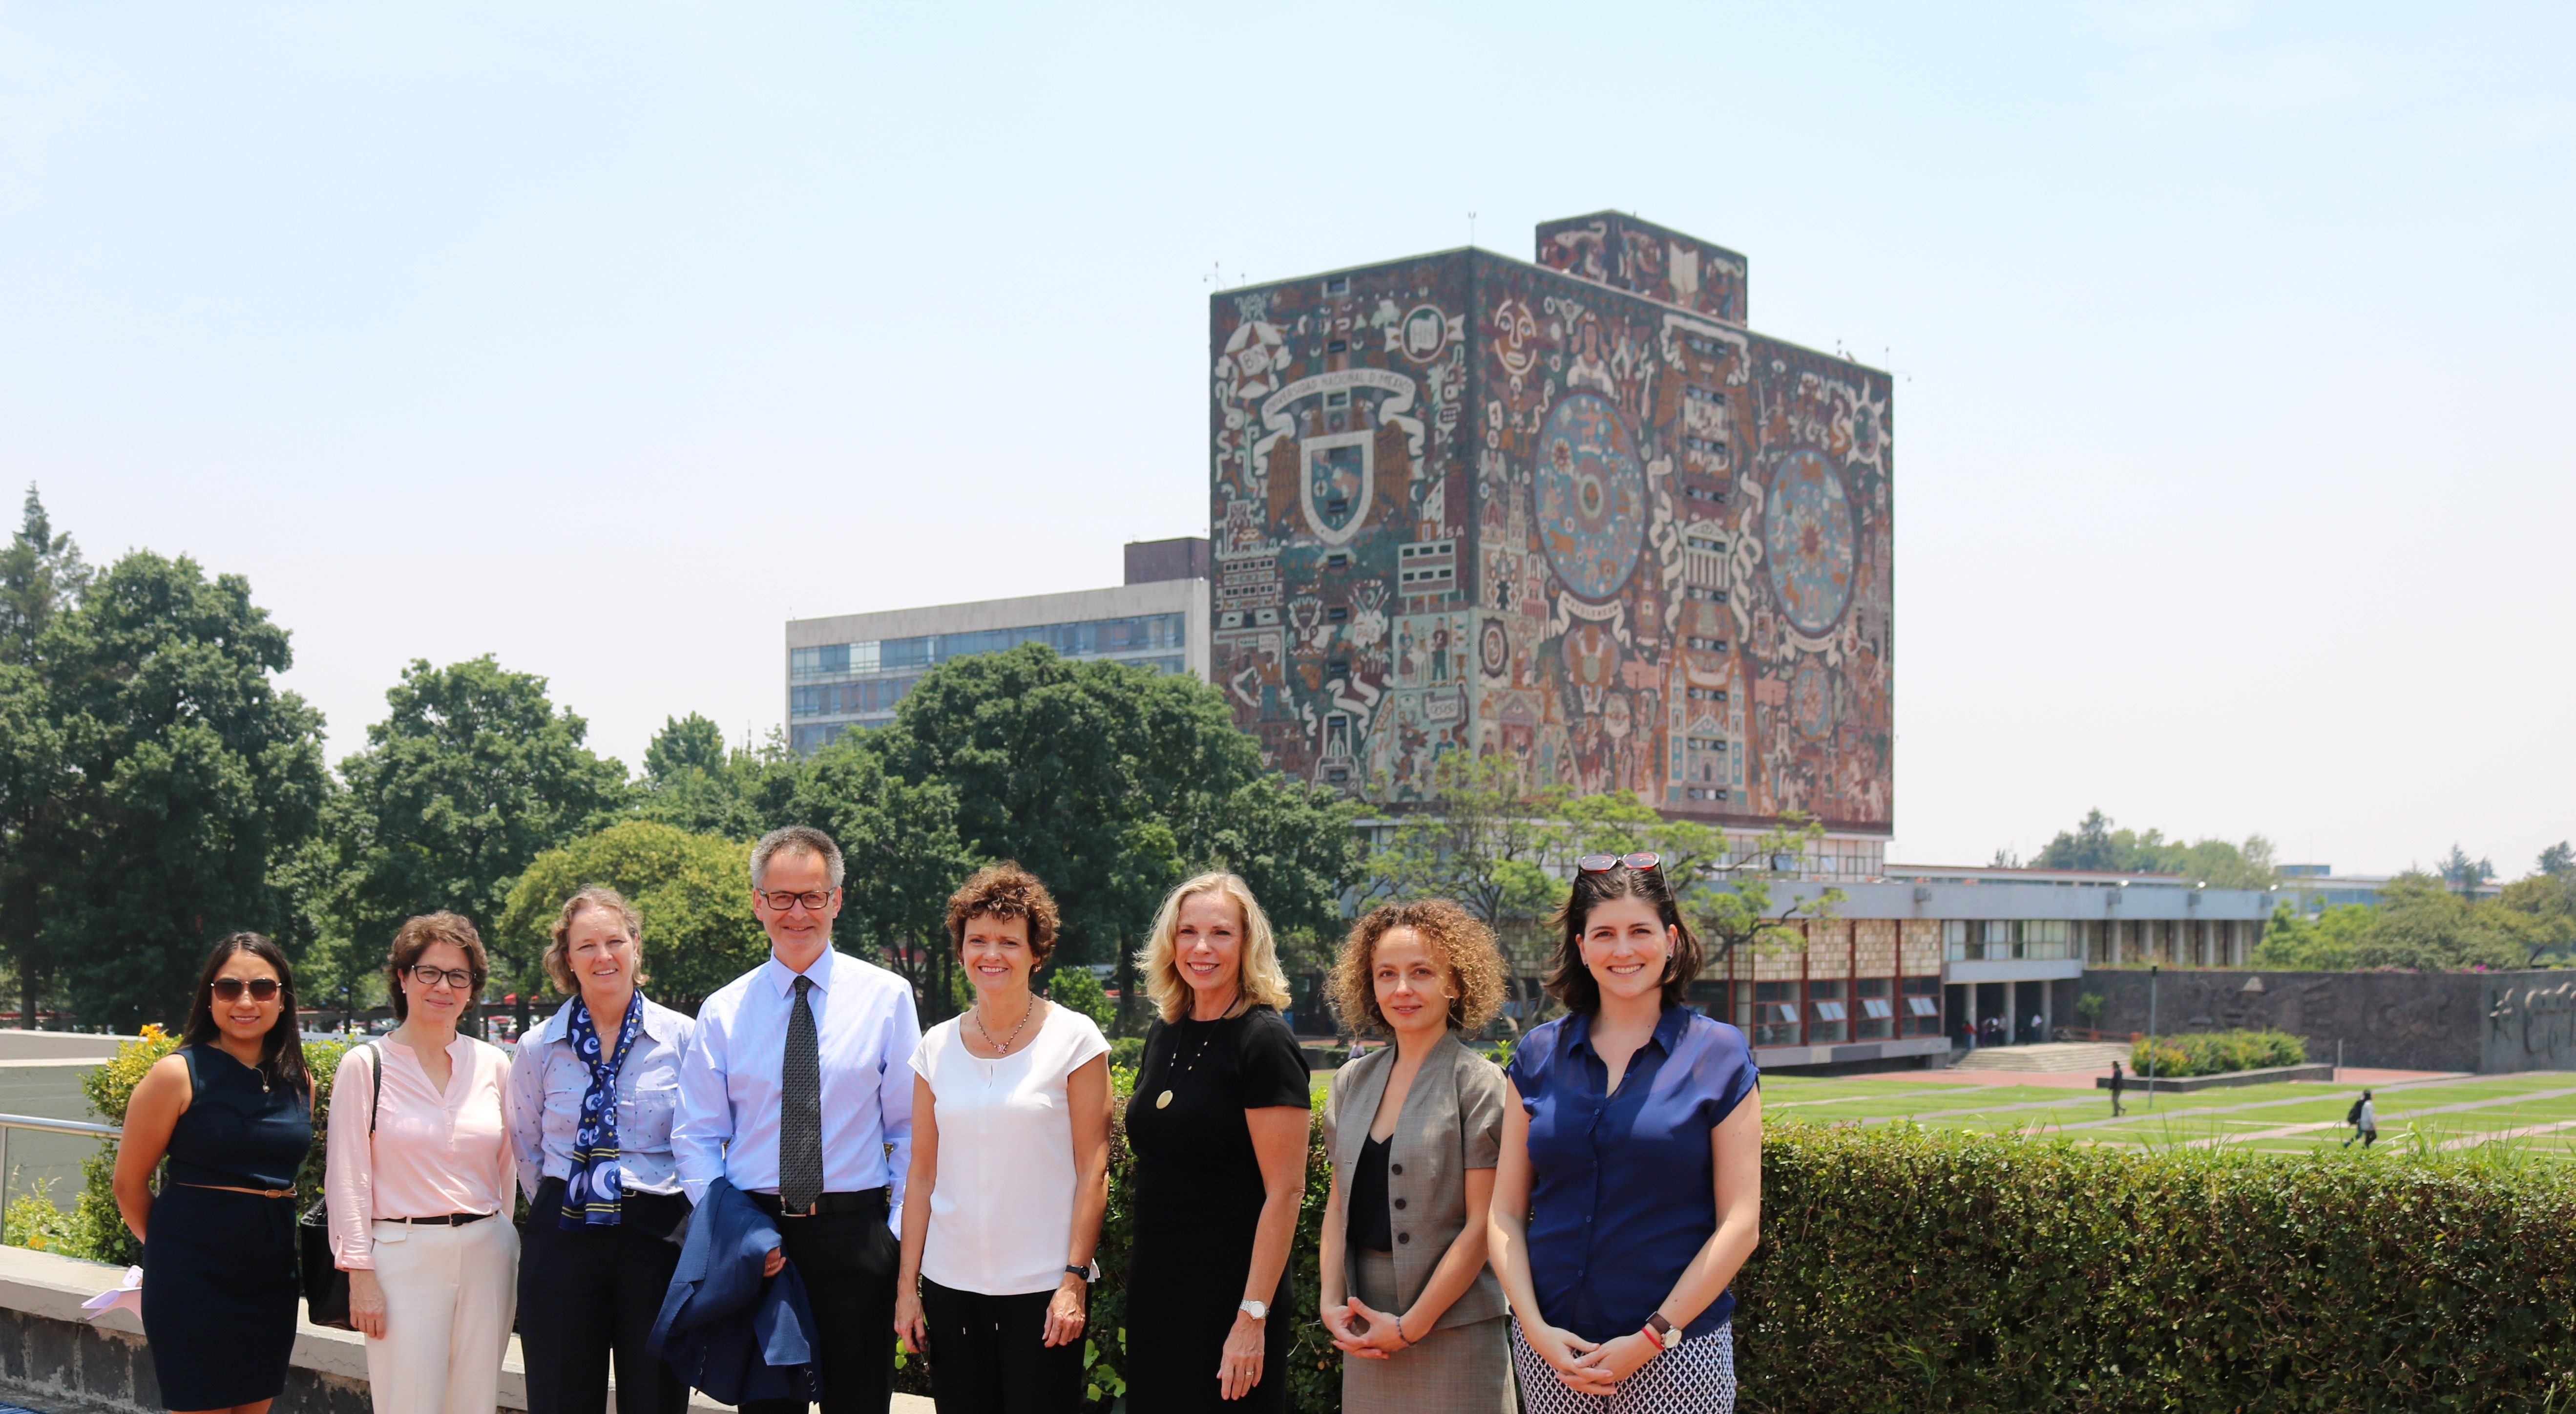 Delegación de la DFG durante la visita guiada al campus de la UNAM. De fondo, la biblioteca principal de la universidad